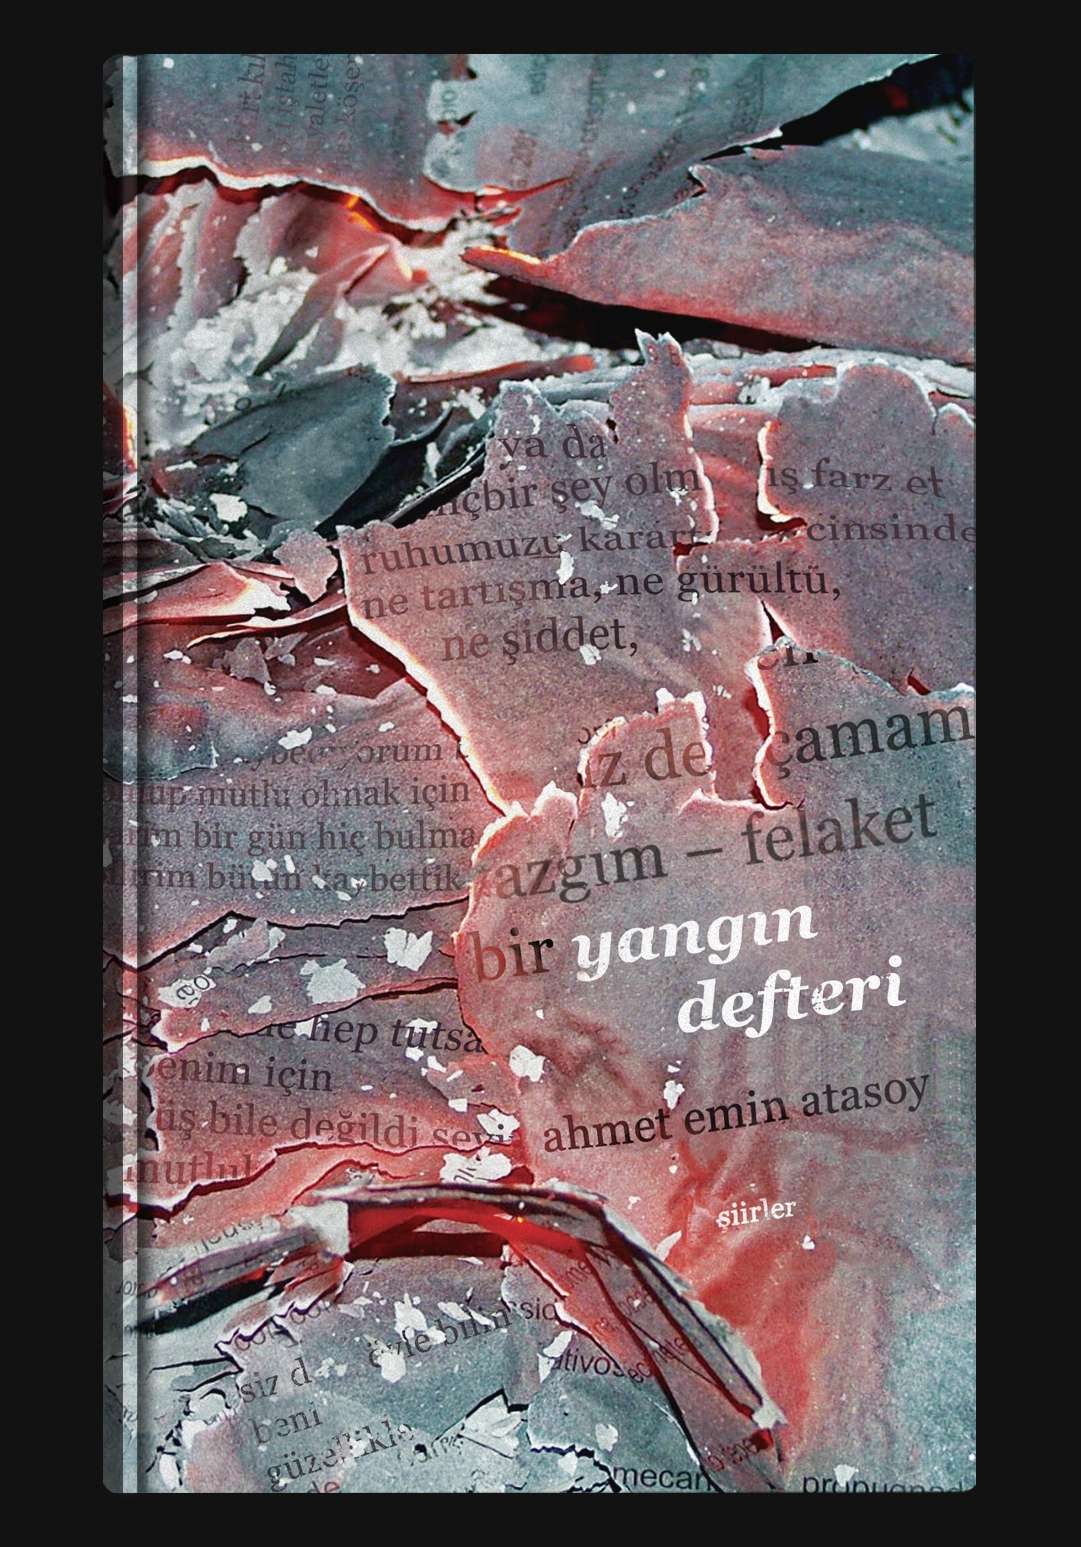 book cover design, cover design, book cover, diseño de cubierta de libro, diseño de cubierta, cubierta de libro